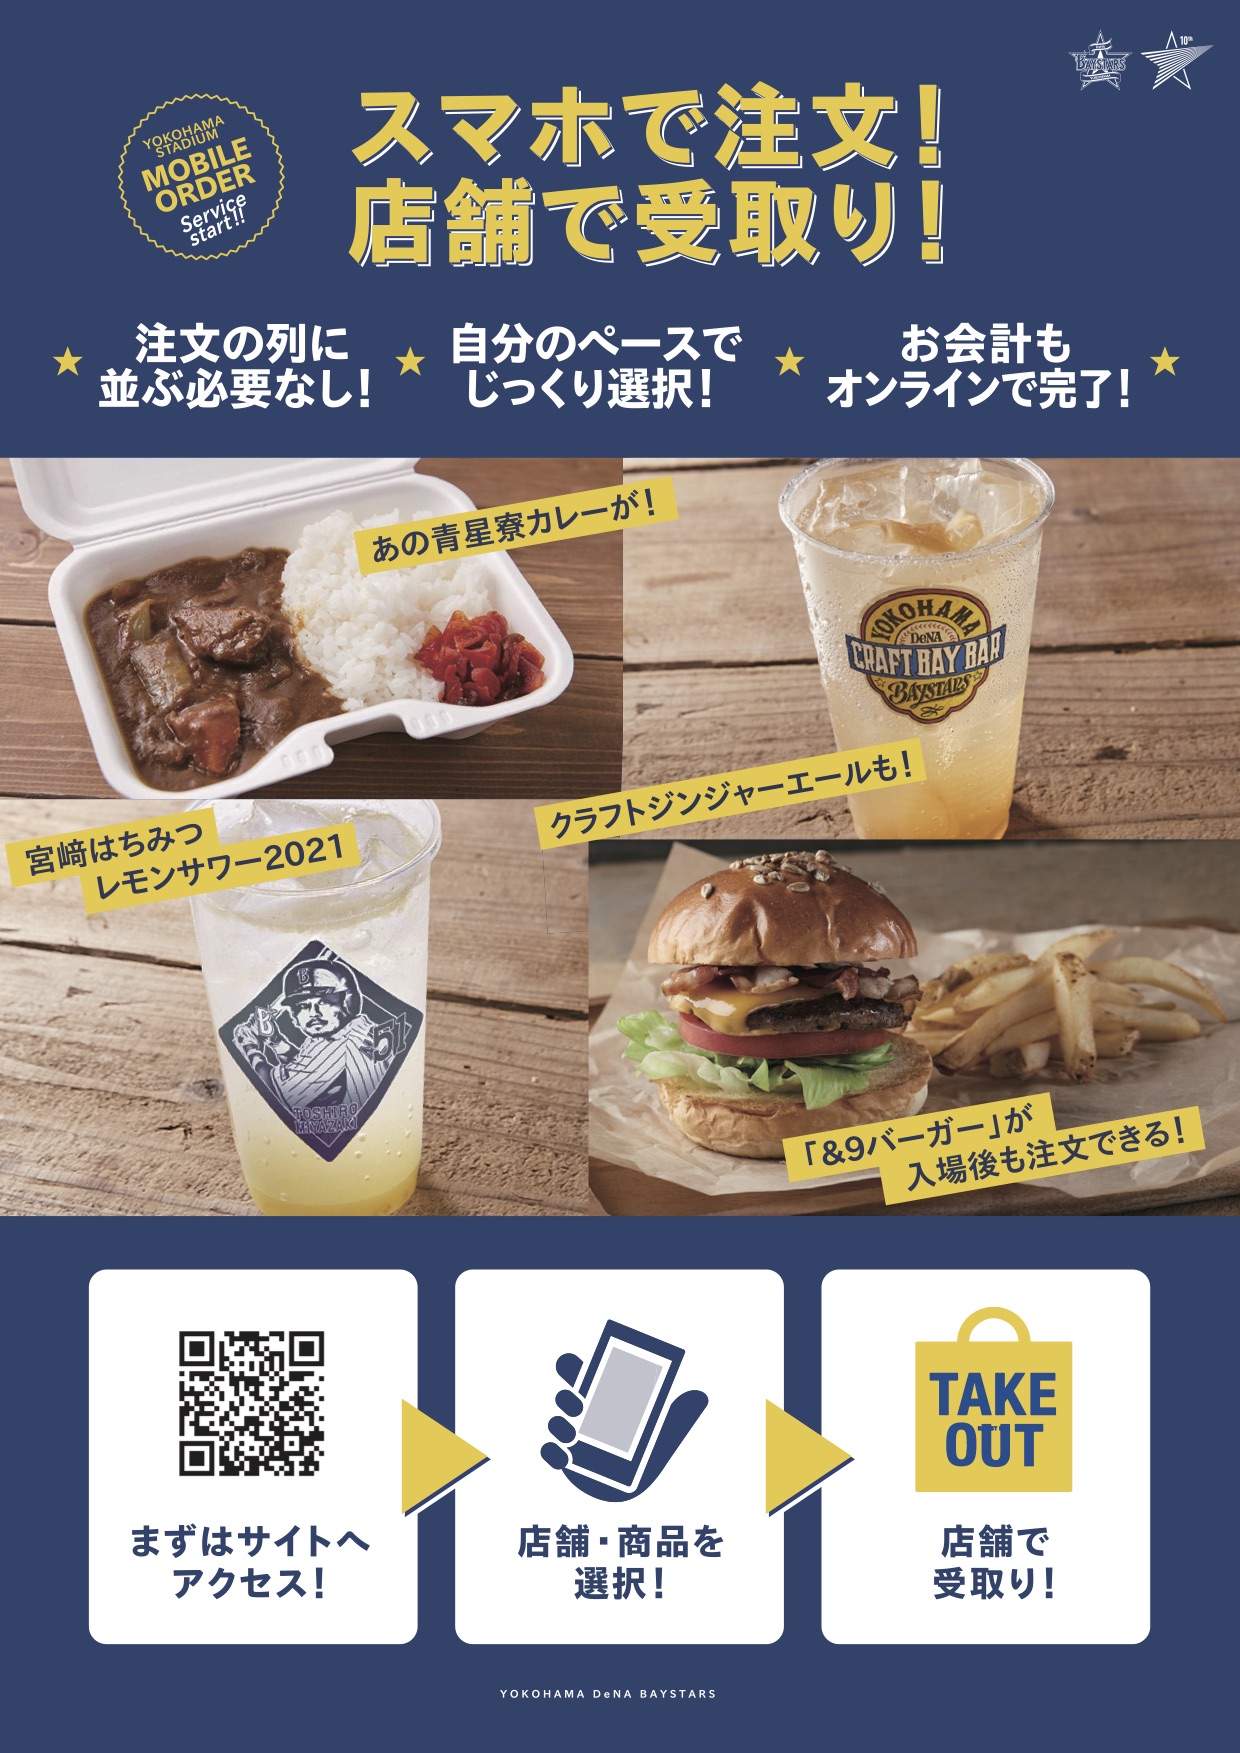 横浜スタジアム内で食品などのモバイル注文が可能となった（外部提供）